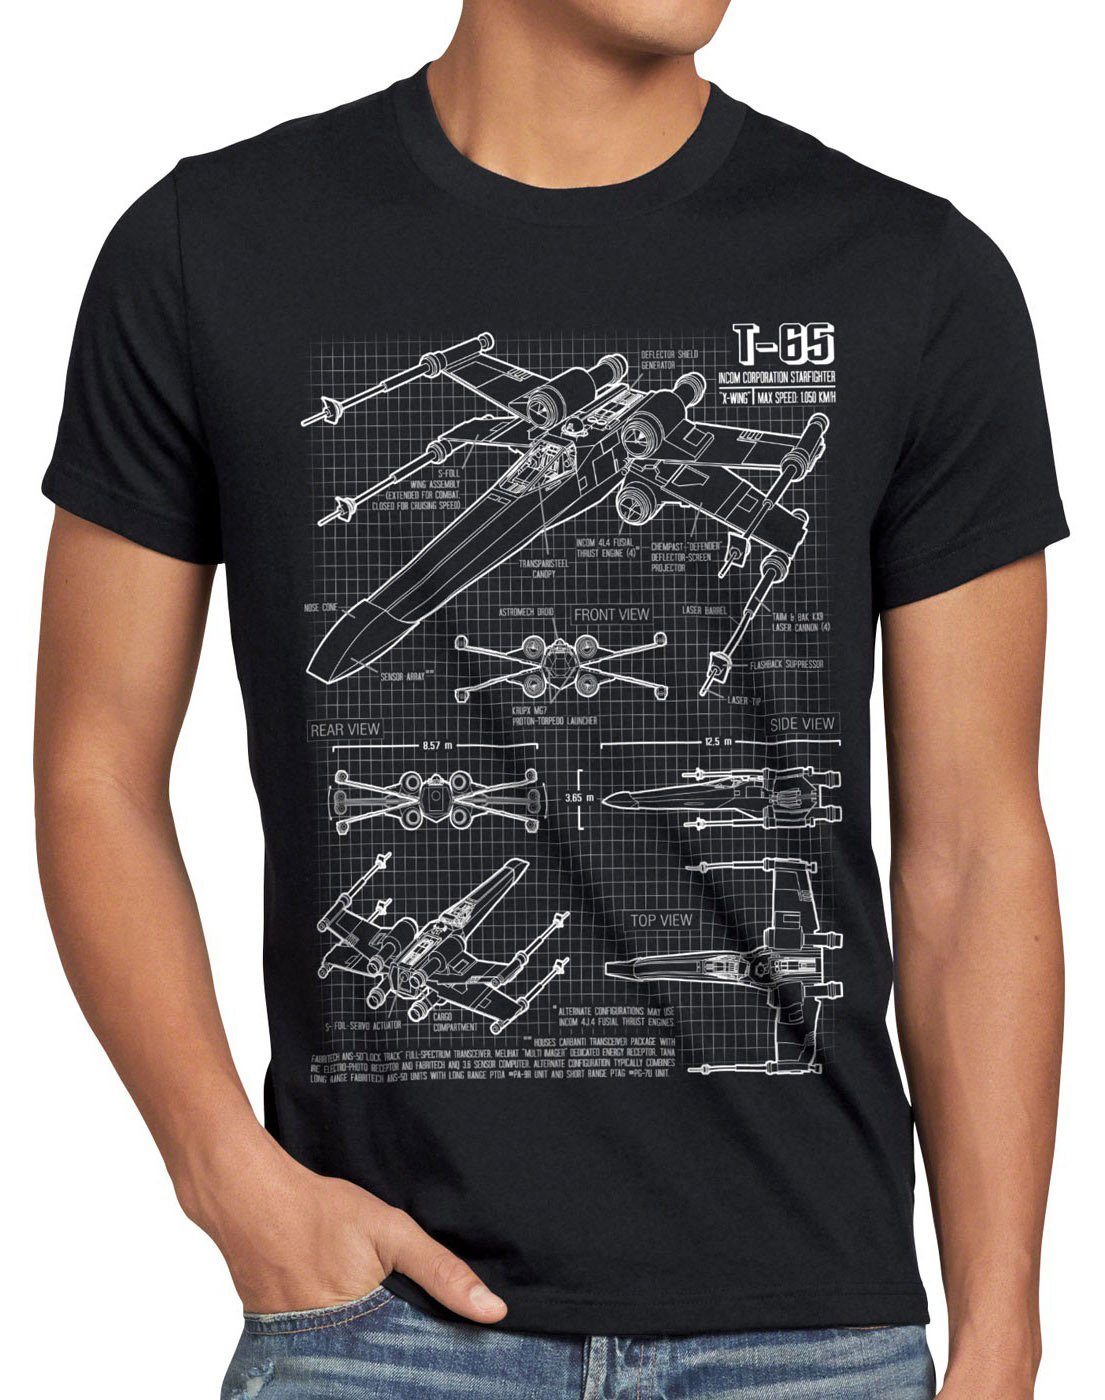 style3 Print-Shirt T-65 Jäger Herren T-Shirt wing star darth wars rebellion battlefront x-flühler schwarz